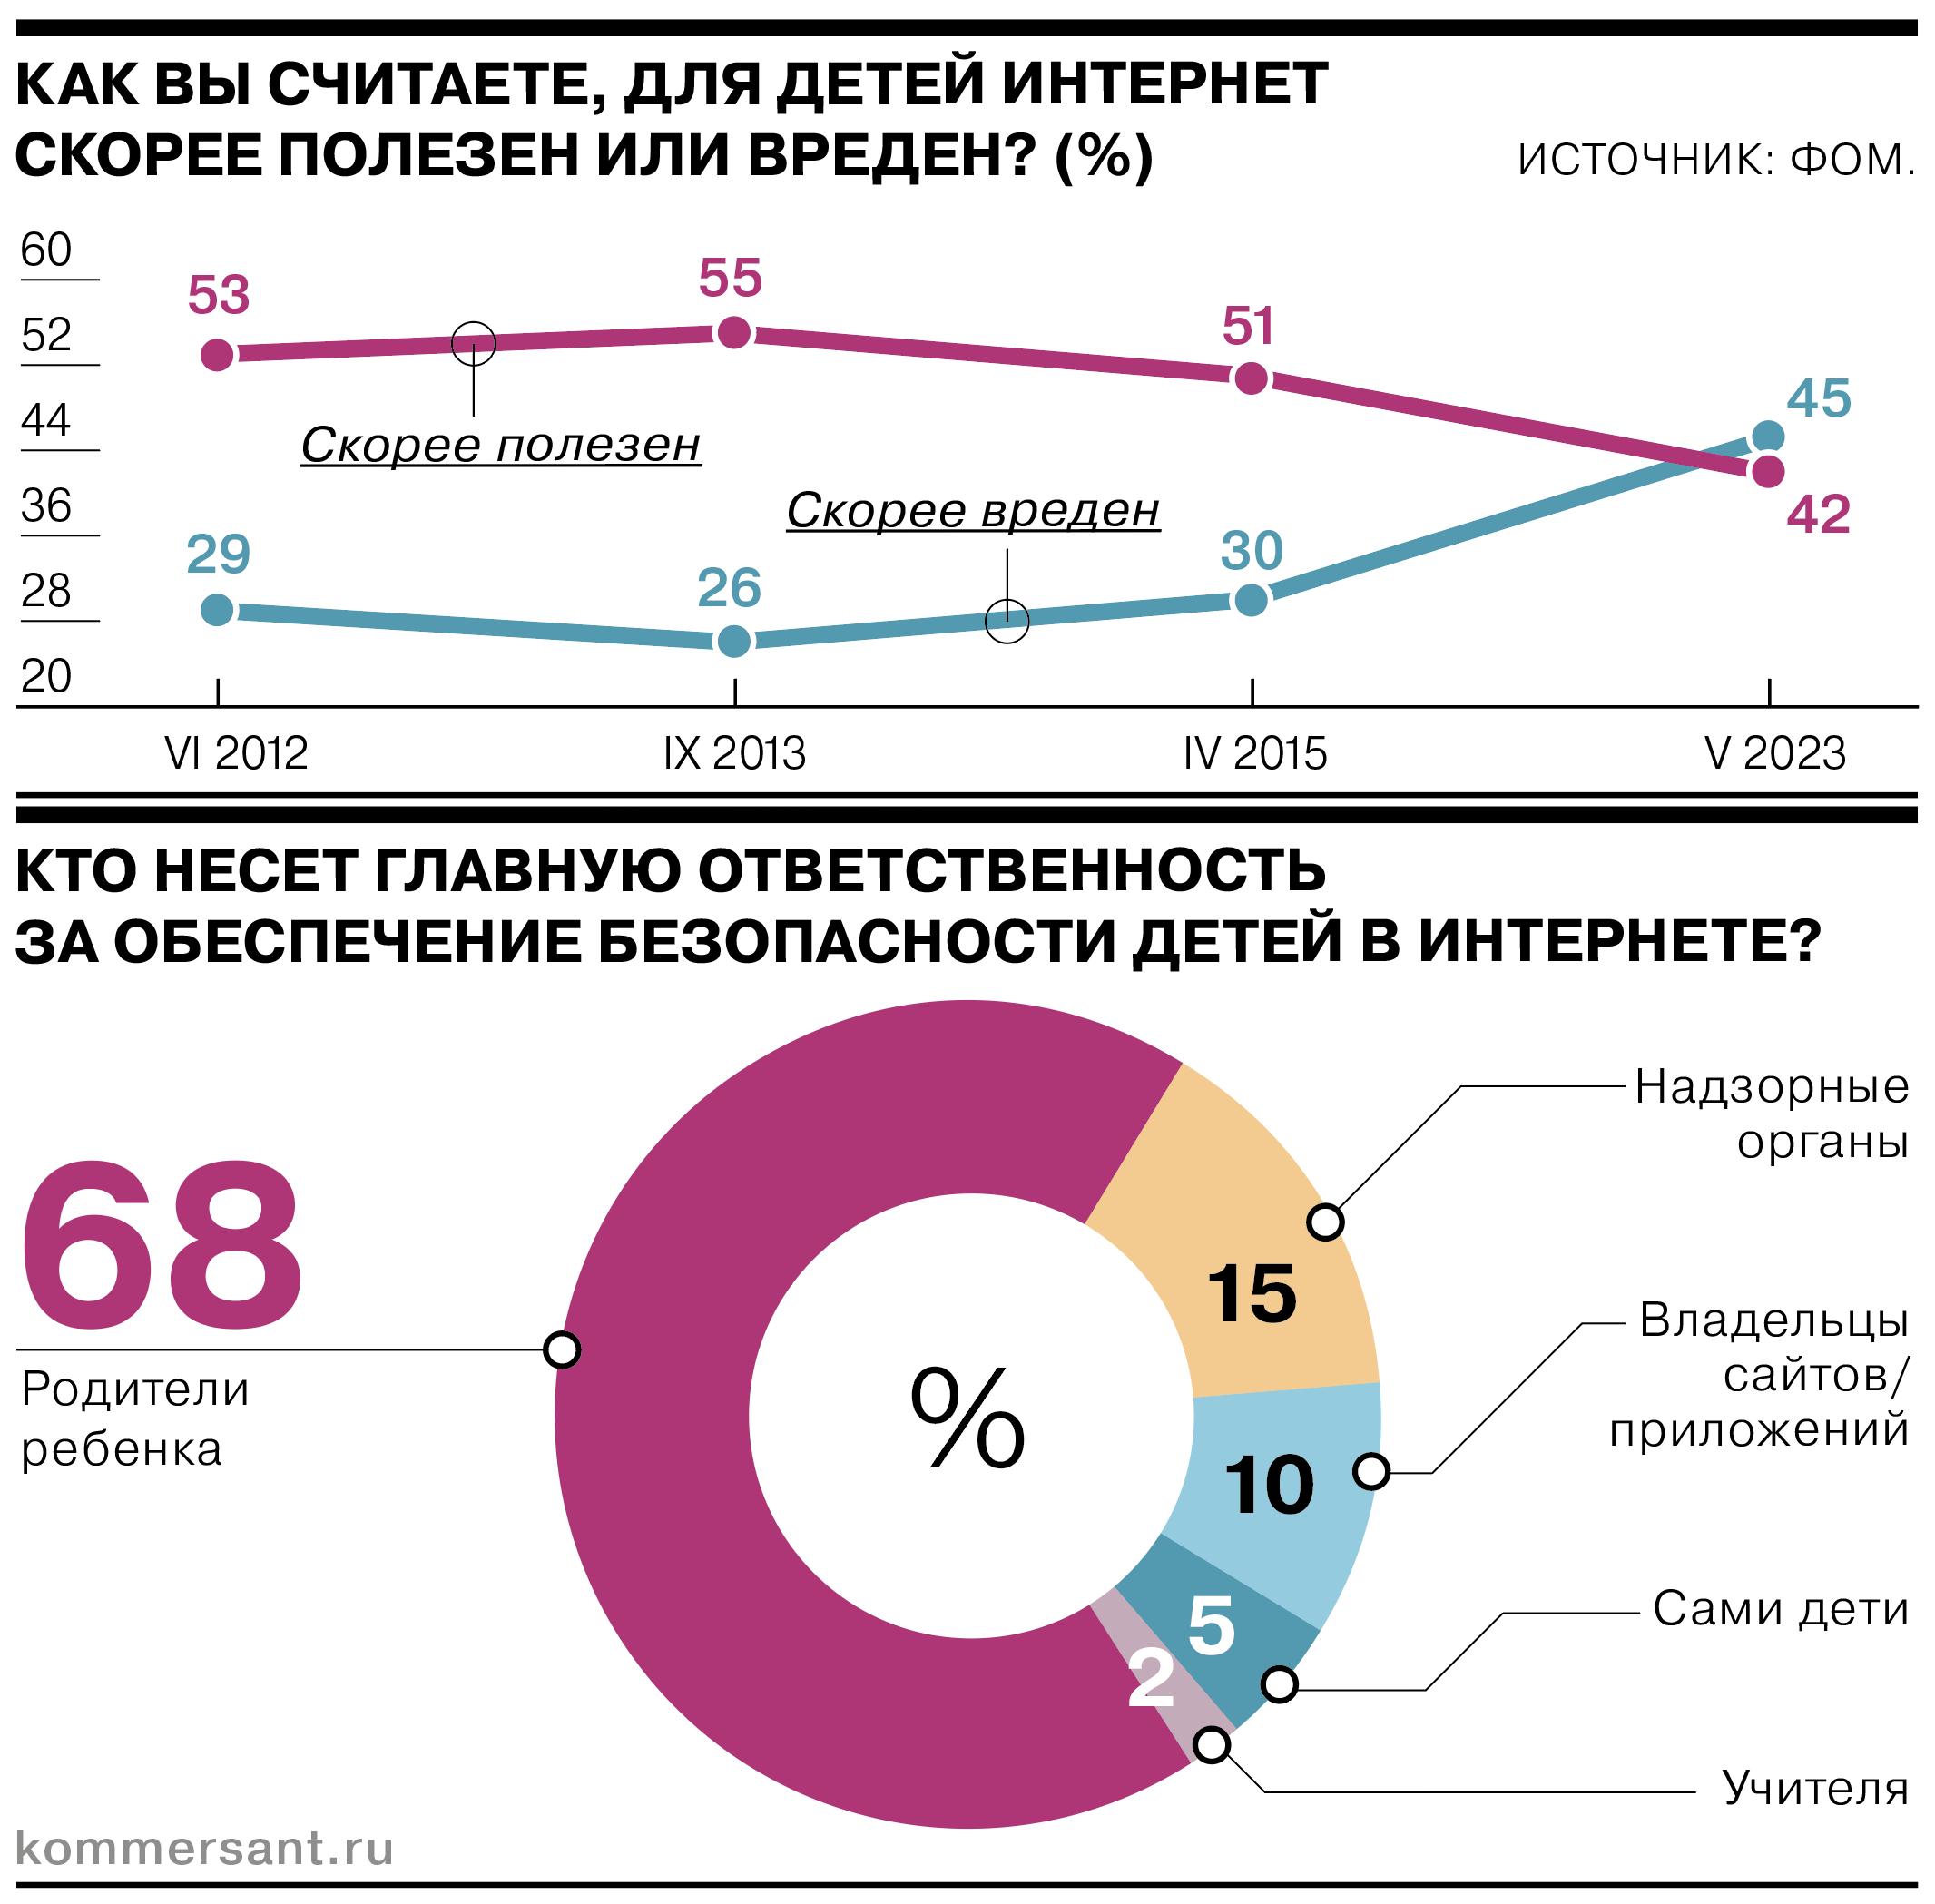 Почти половина россиян считает, что интернет для детей скорее вреден, чем полезен